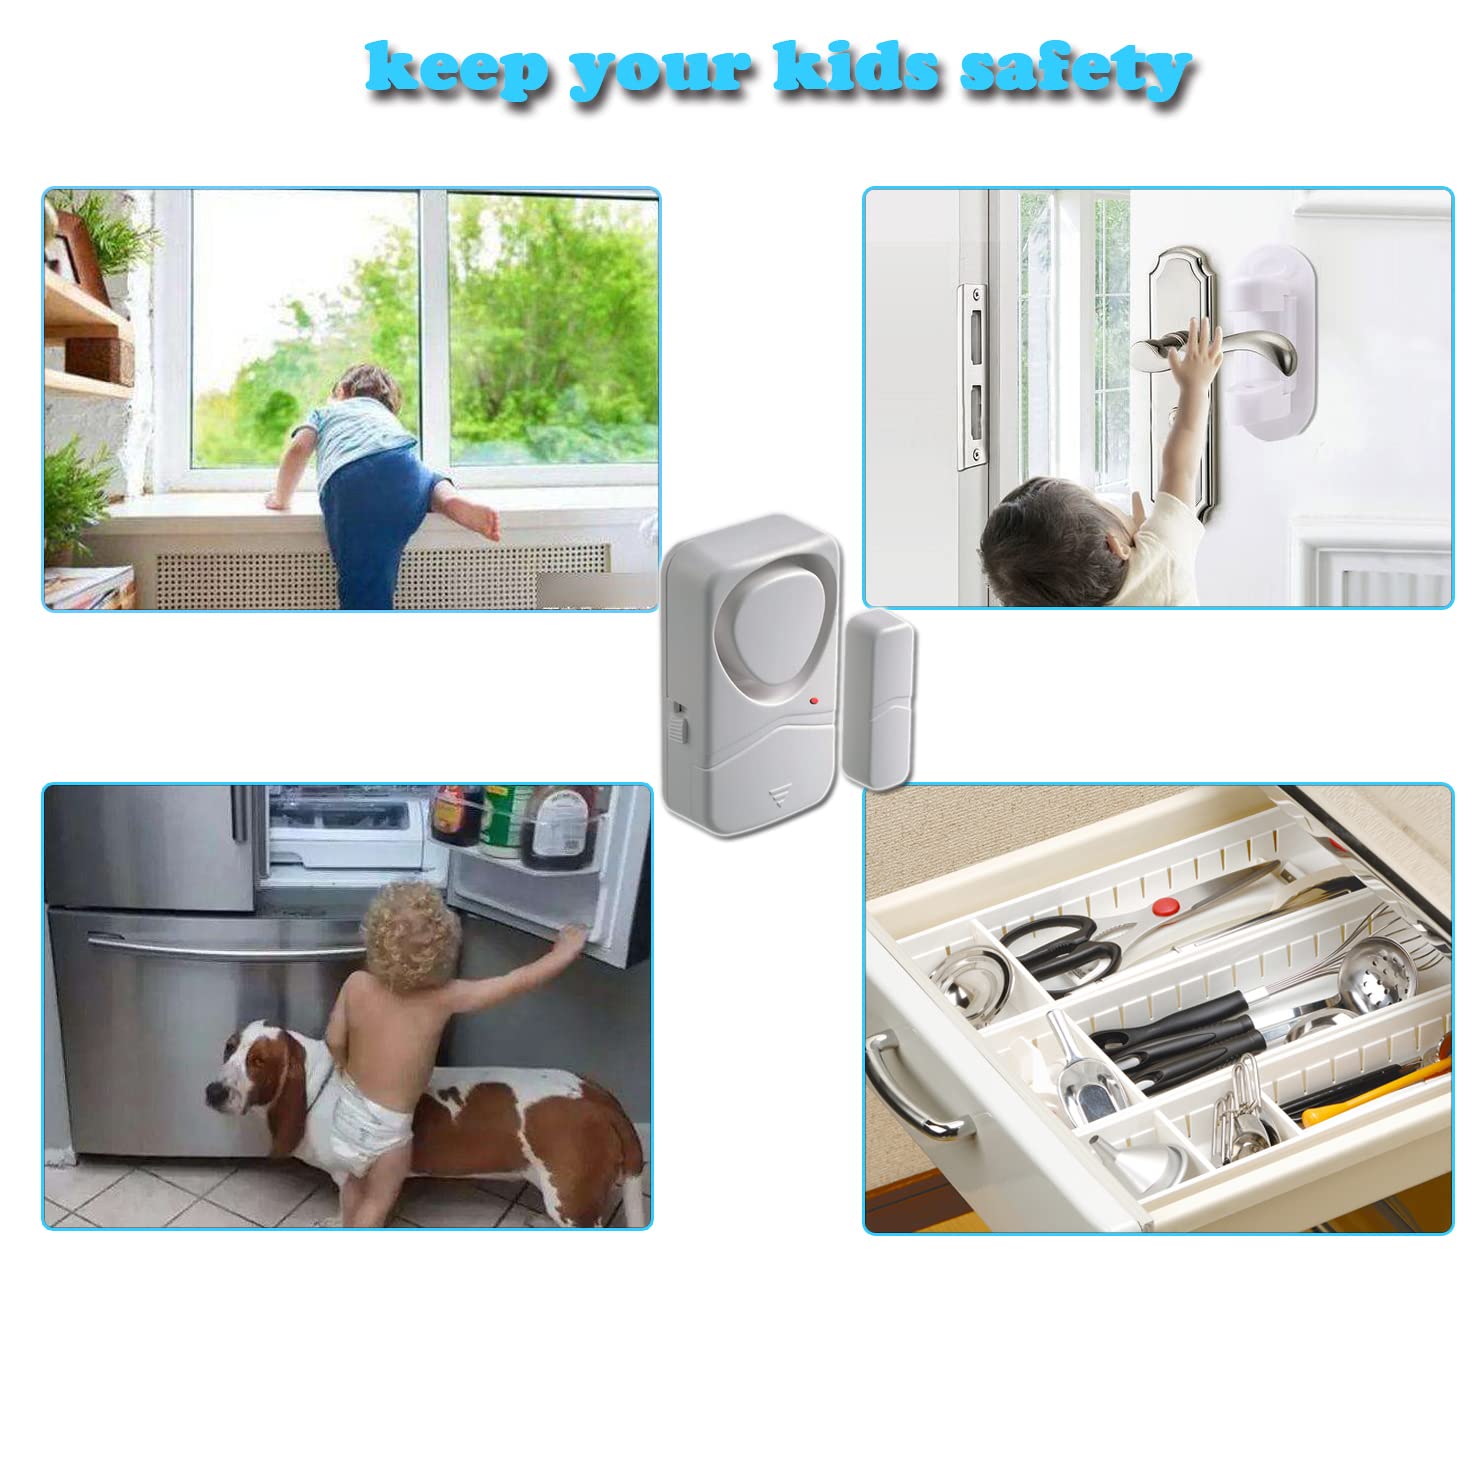 Door alarm for Home, Door Sensor, Window Alarm, Pool Door Alarm for Kids (6)